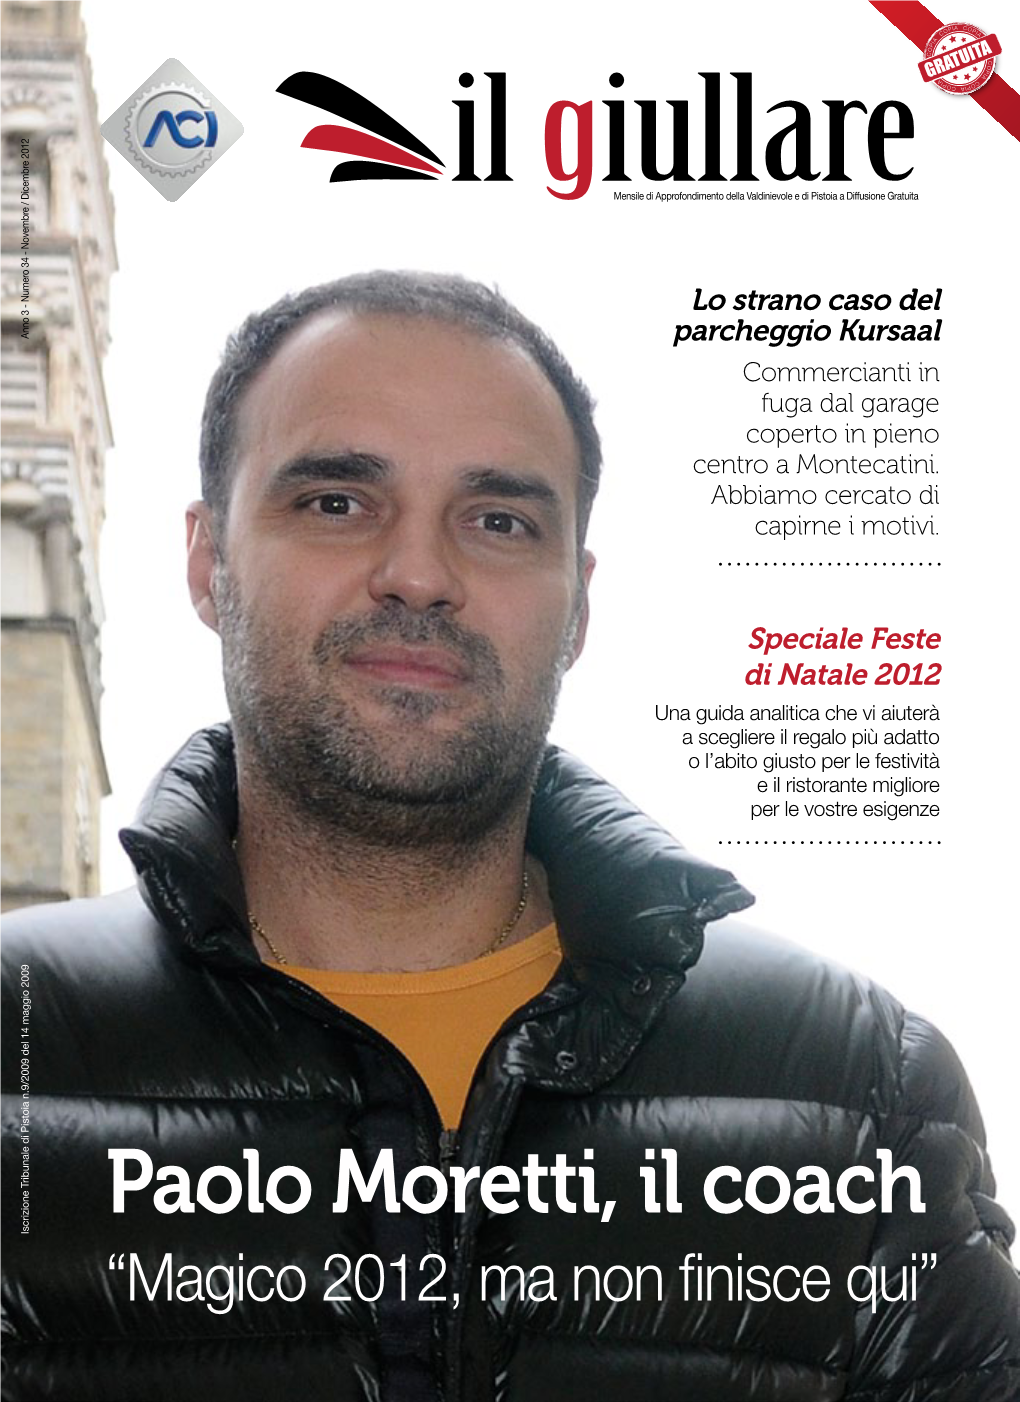 Paolo Moretti, Il Coach Iscrizione Tribunale Di Pistoia N.9/2009 Del 14 Maggio 2009 Iscrizione Tribunale “Magico 2012, Ma Non Finisce Qui”